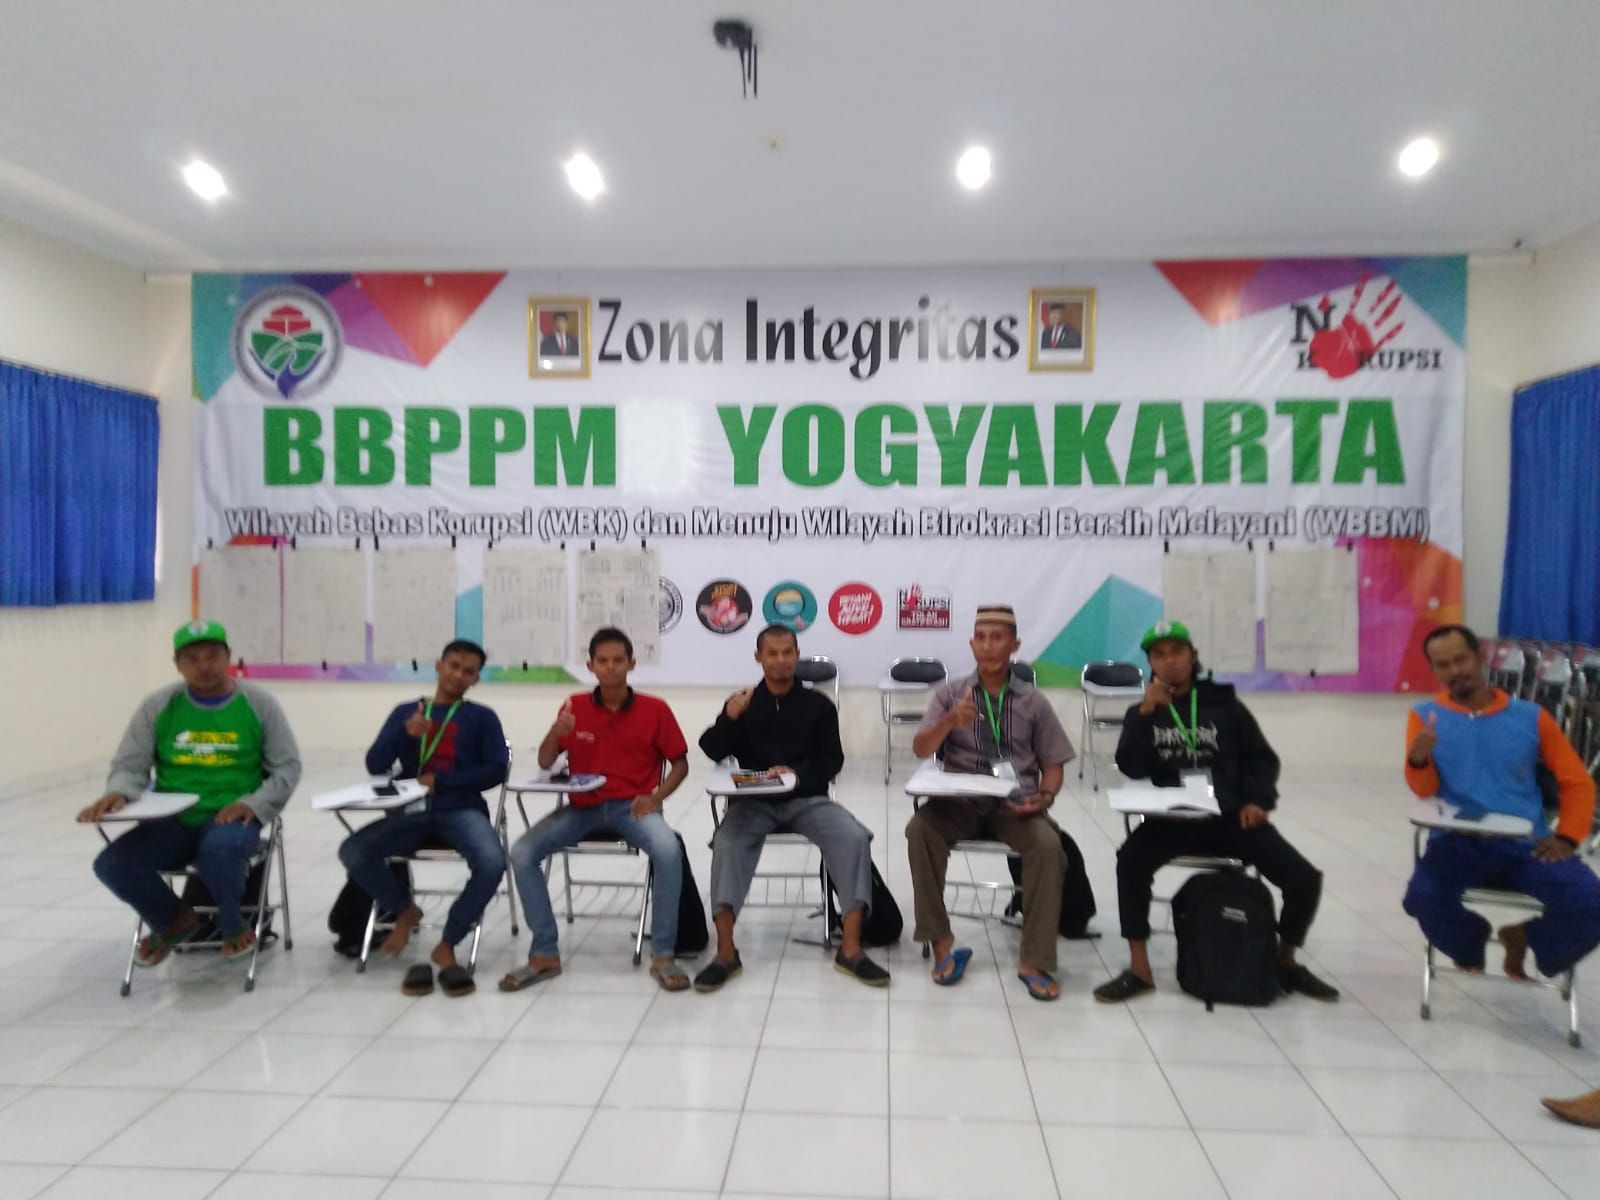 Sebelum berangkat menjadi transmigran, para KK mengikuti pelatihan di BBPPM Yogyakarta.